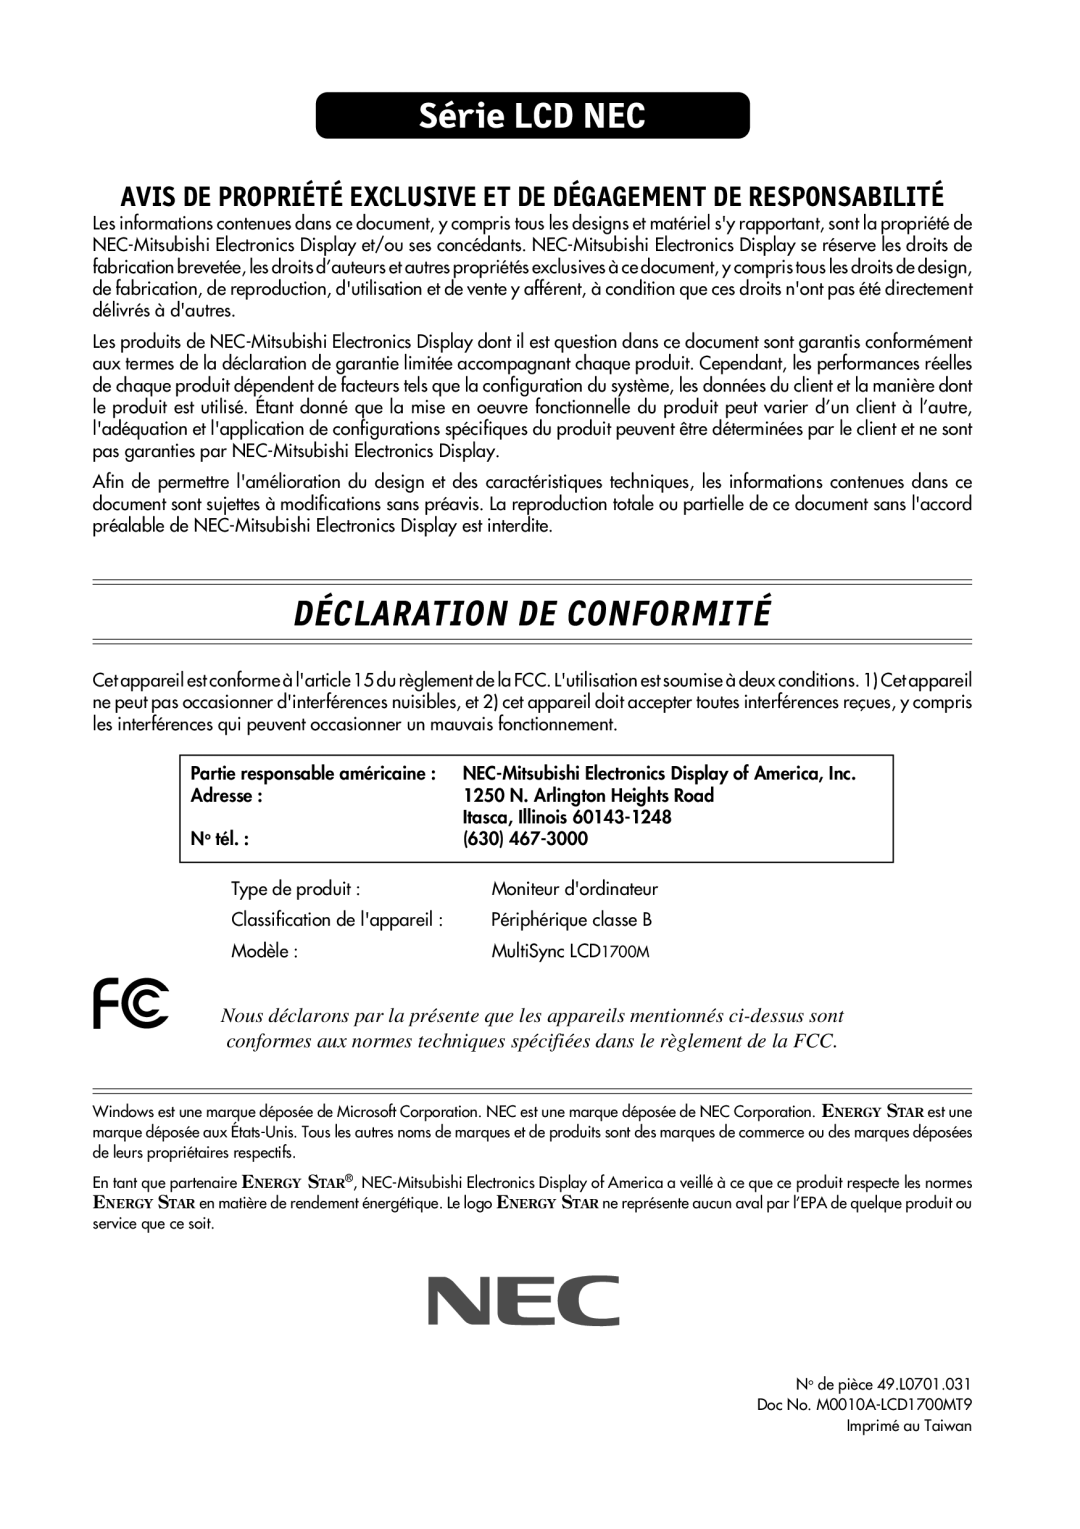 NEC LCD1700M Série LCD NEC, Déclaration De Conformité, Avis De Propriété Exclusive Et De Dégagement De Responsabilité 